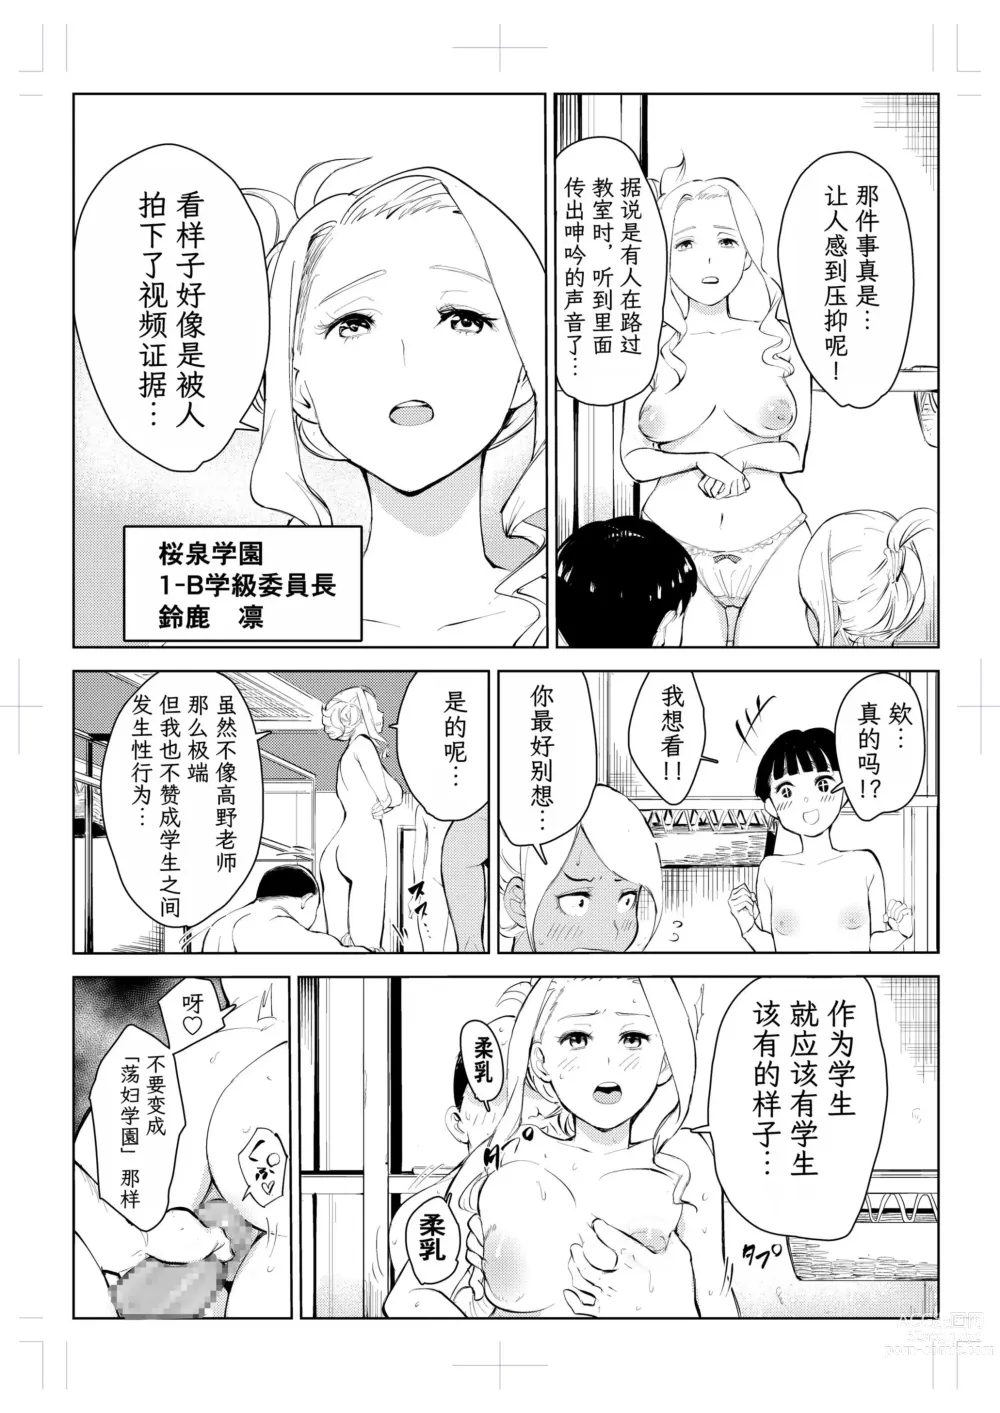 Page 288 of doujinshi 40-sai no Mahoutukai  1-4